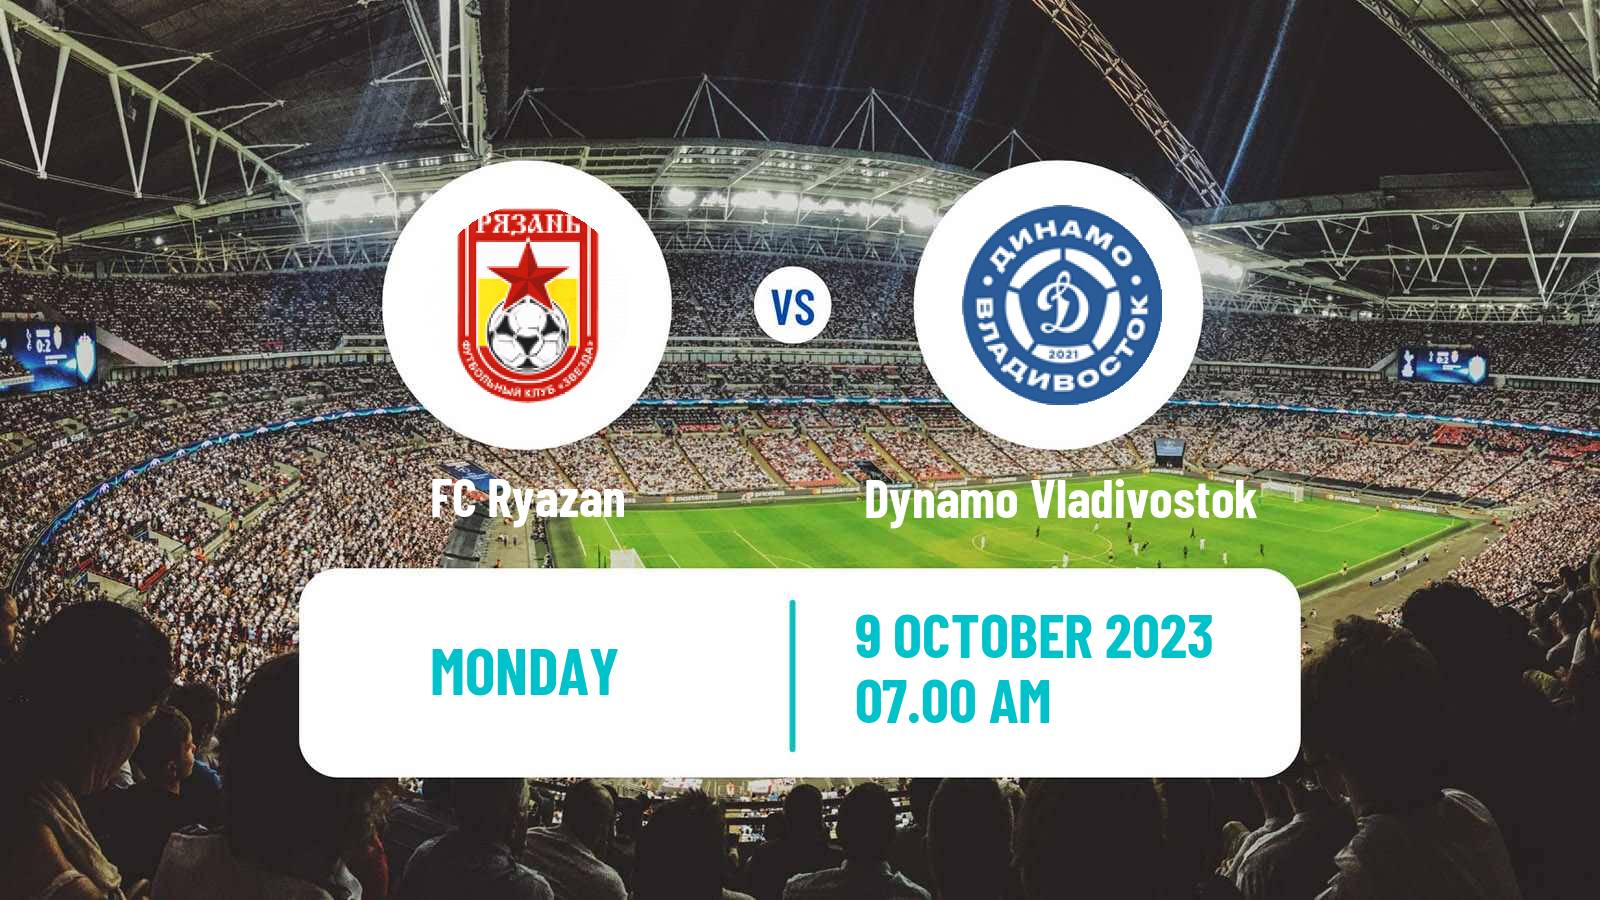 Soccer FNL 2 Division B Group 3 Ryazan - Dynamo Vladivostok